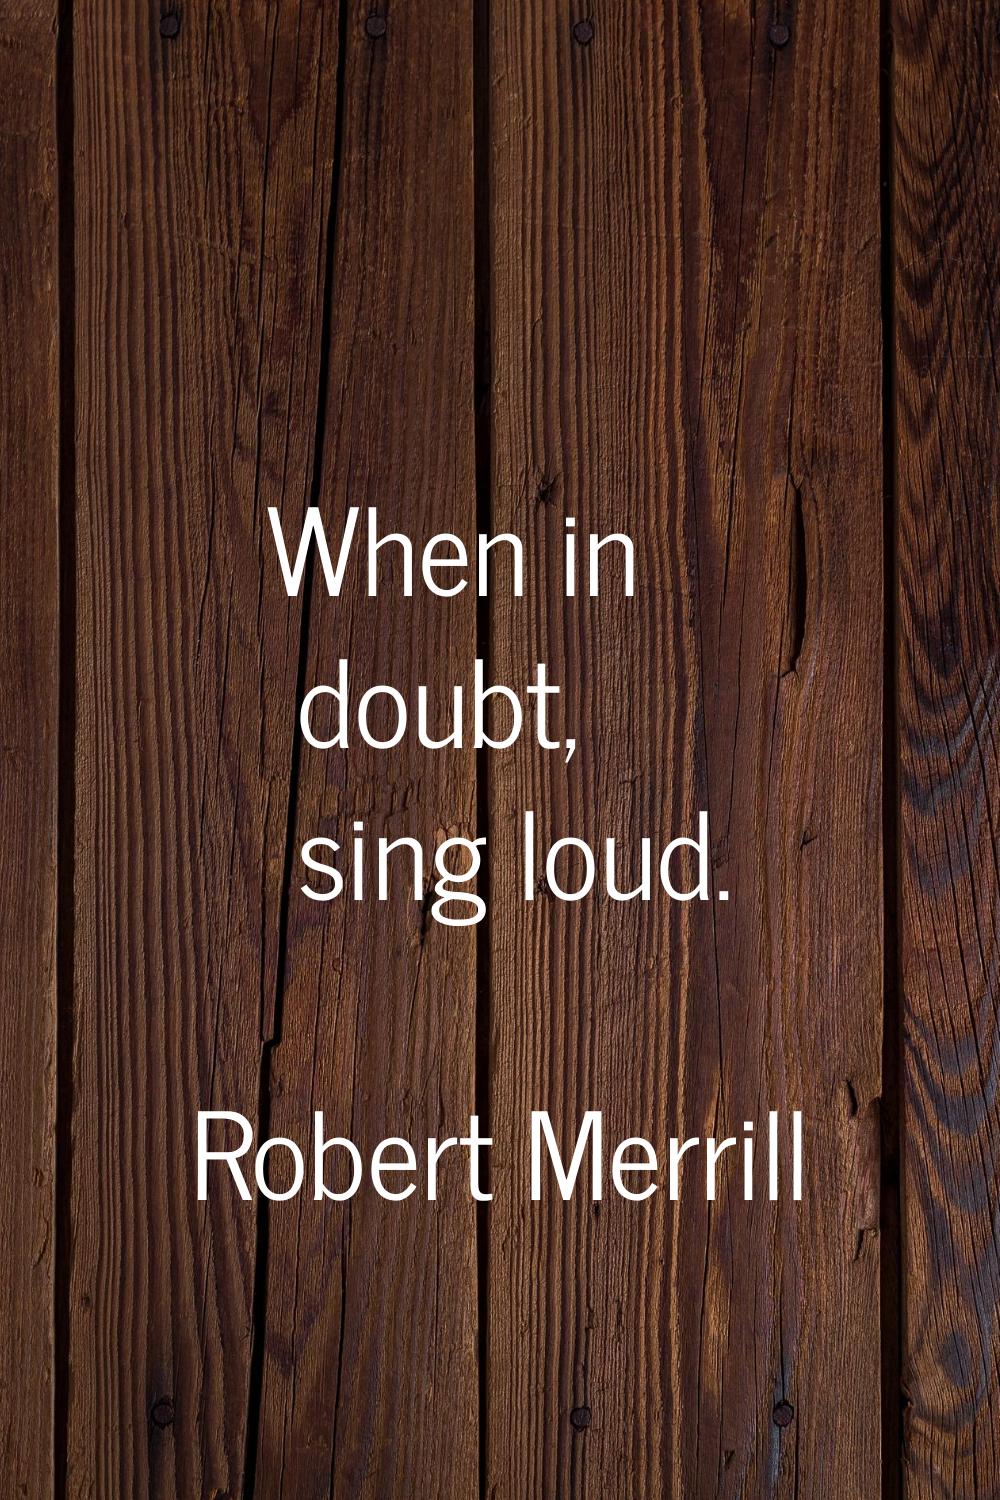 When in doubt, sing loud.